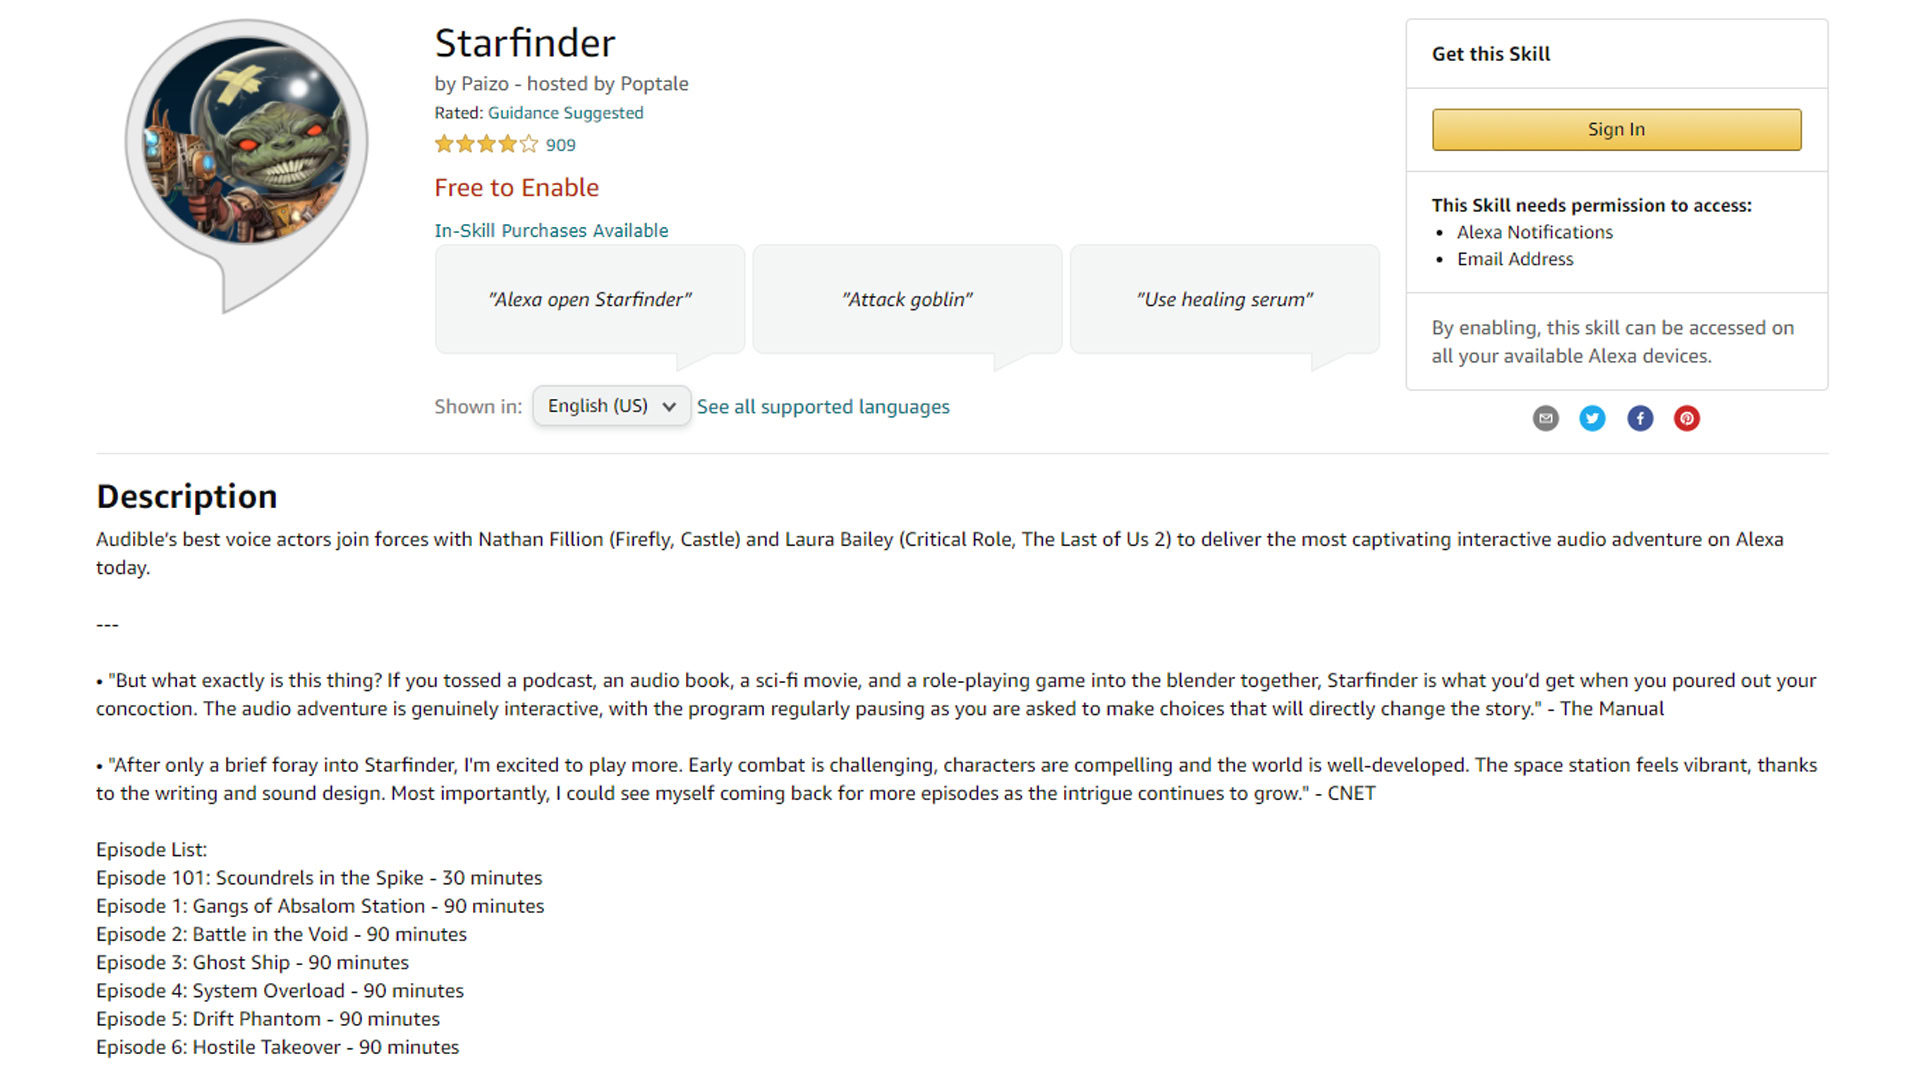 Starfinder for Alexa